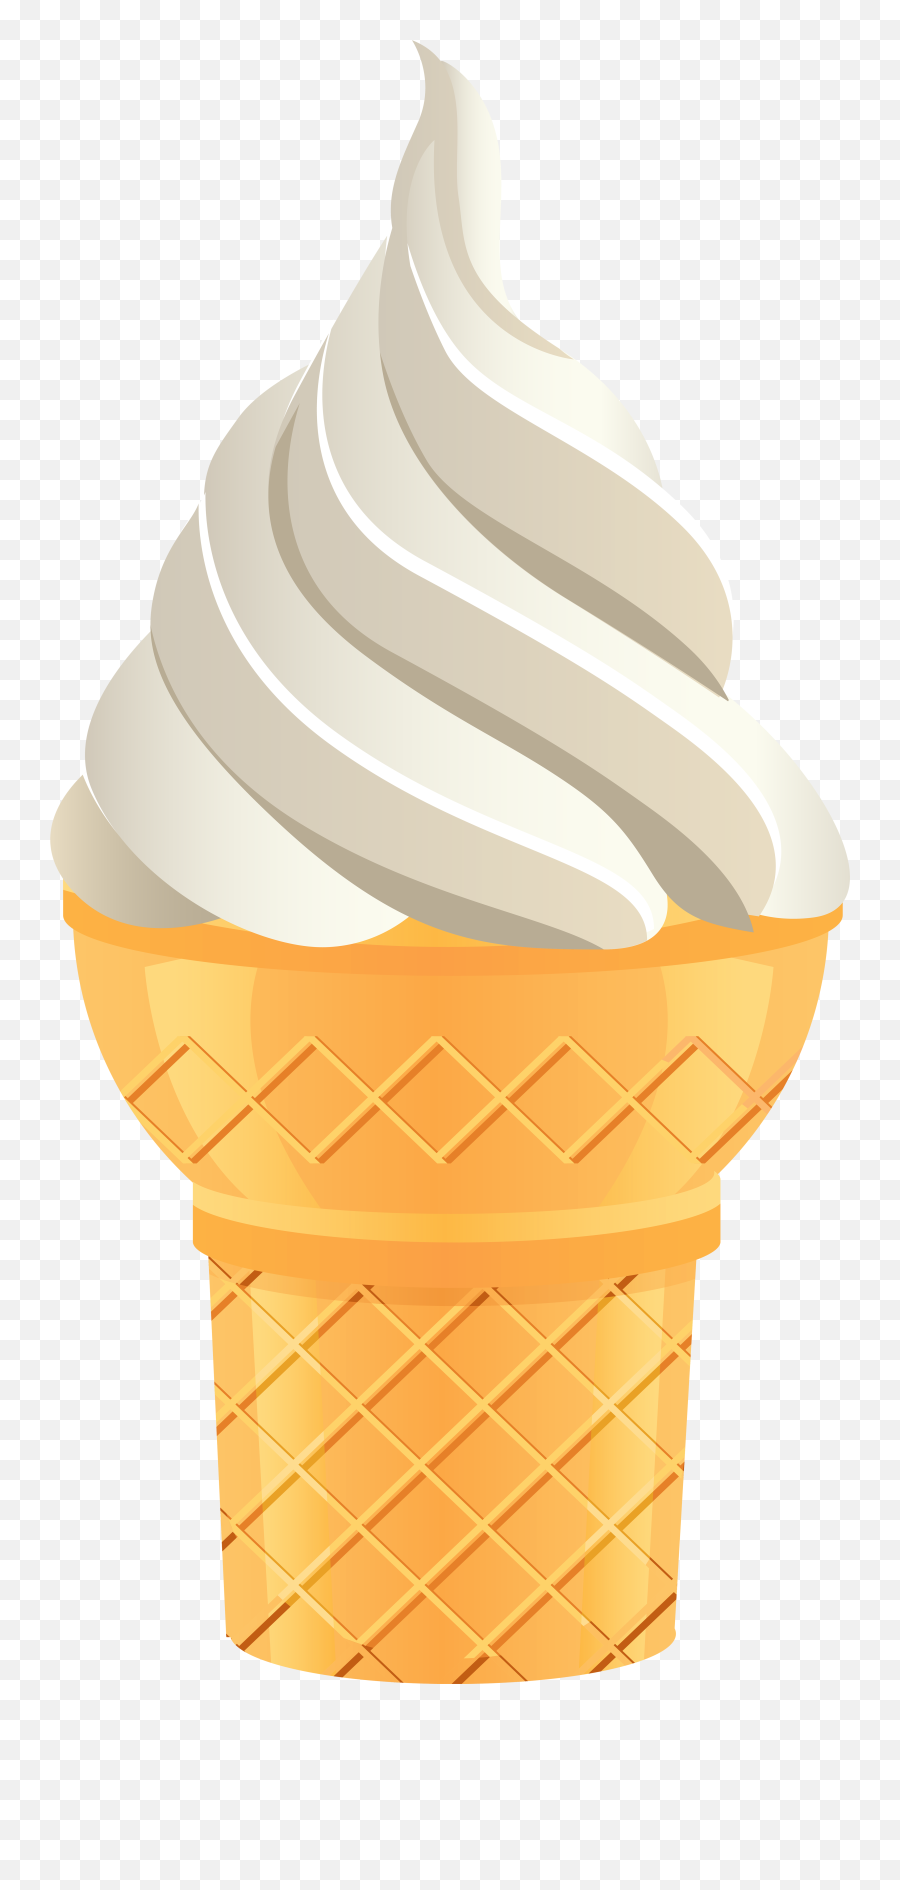 Ice Cream Cone Png Transparent Clip Art - Transparent Background Ice Cream Cone Transparent Emoji,Ice Cream Transparent